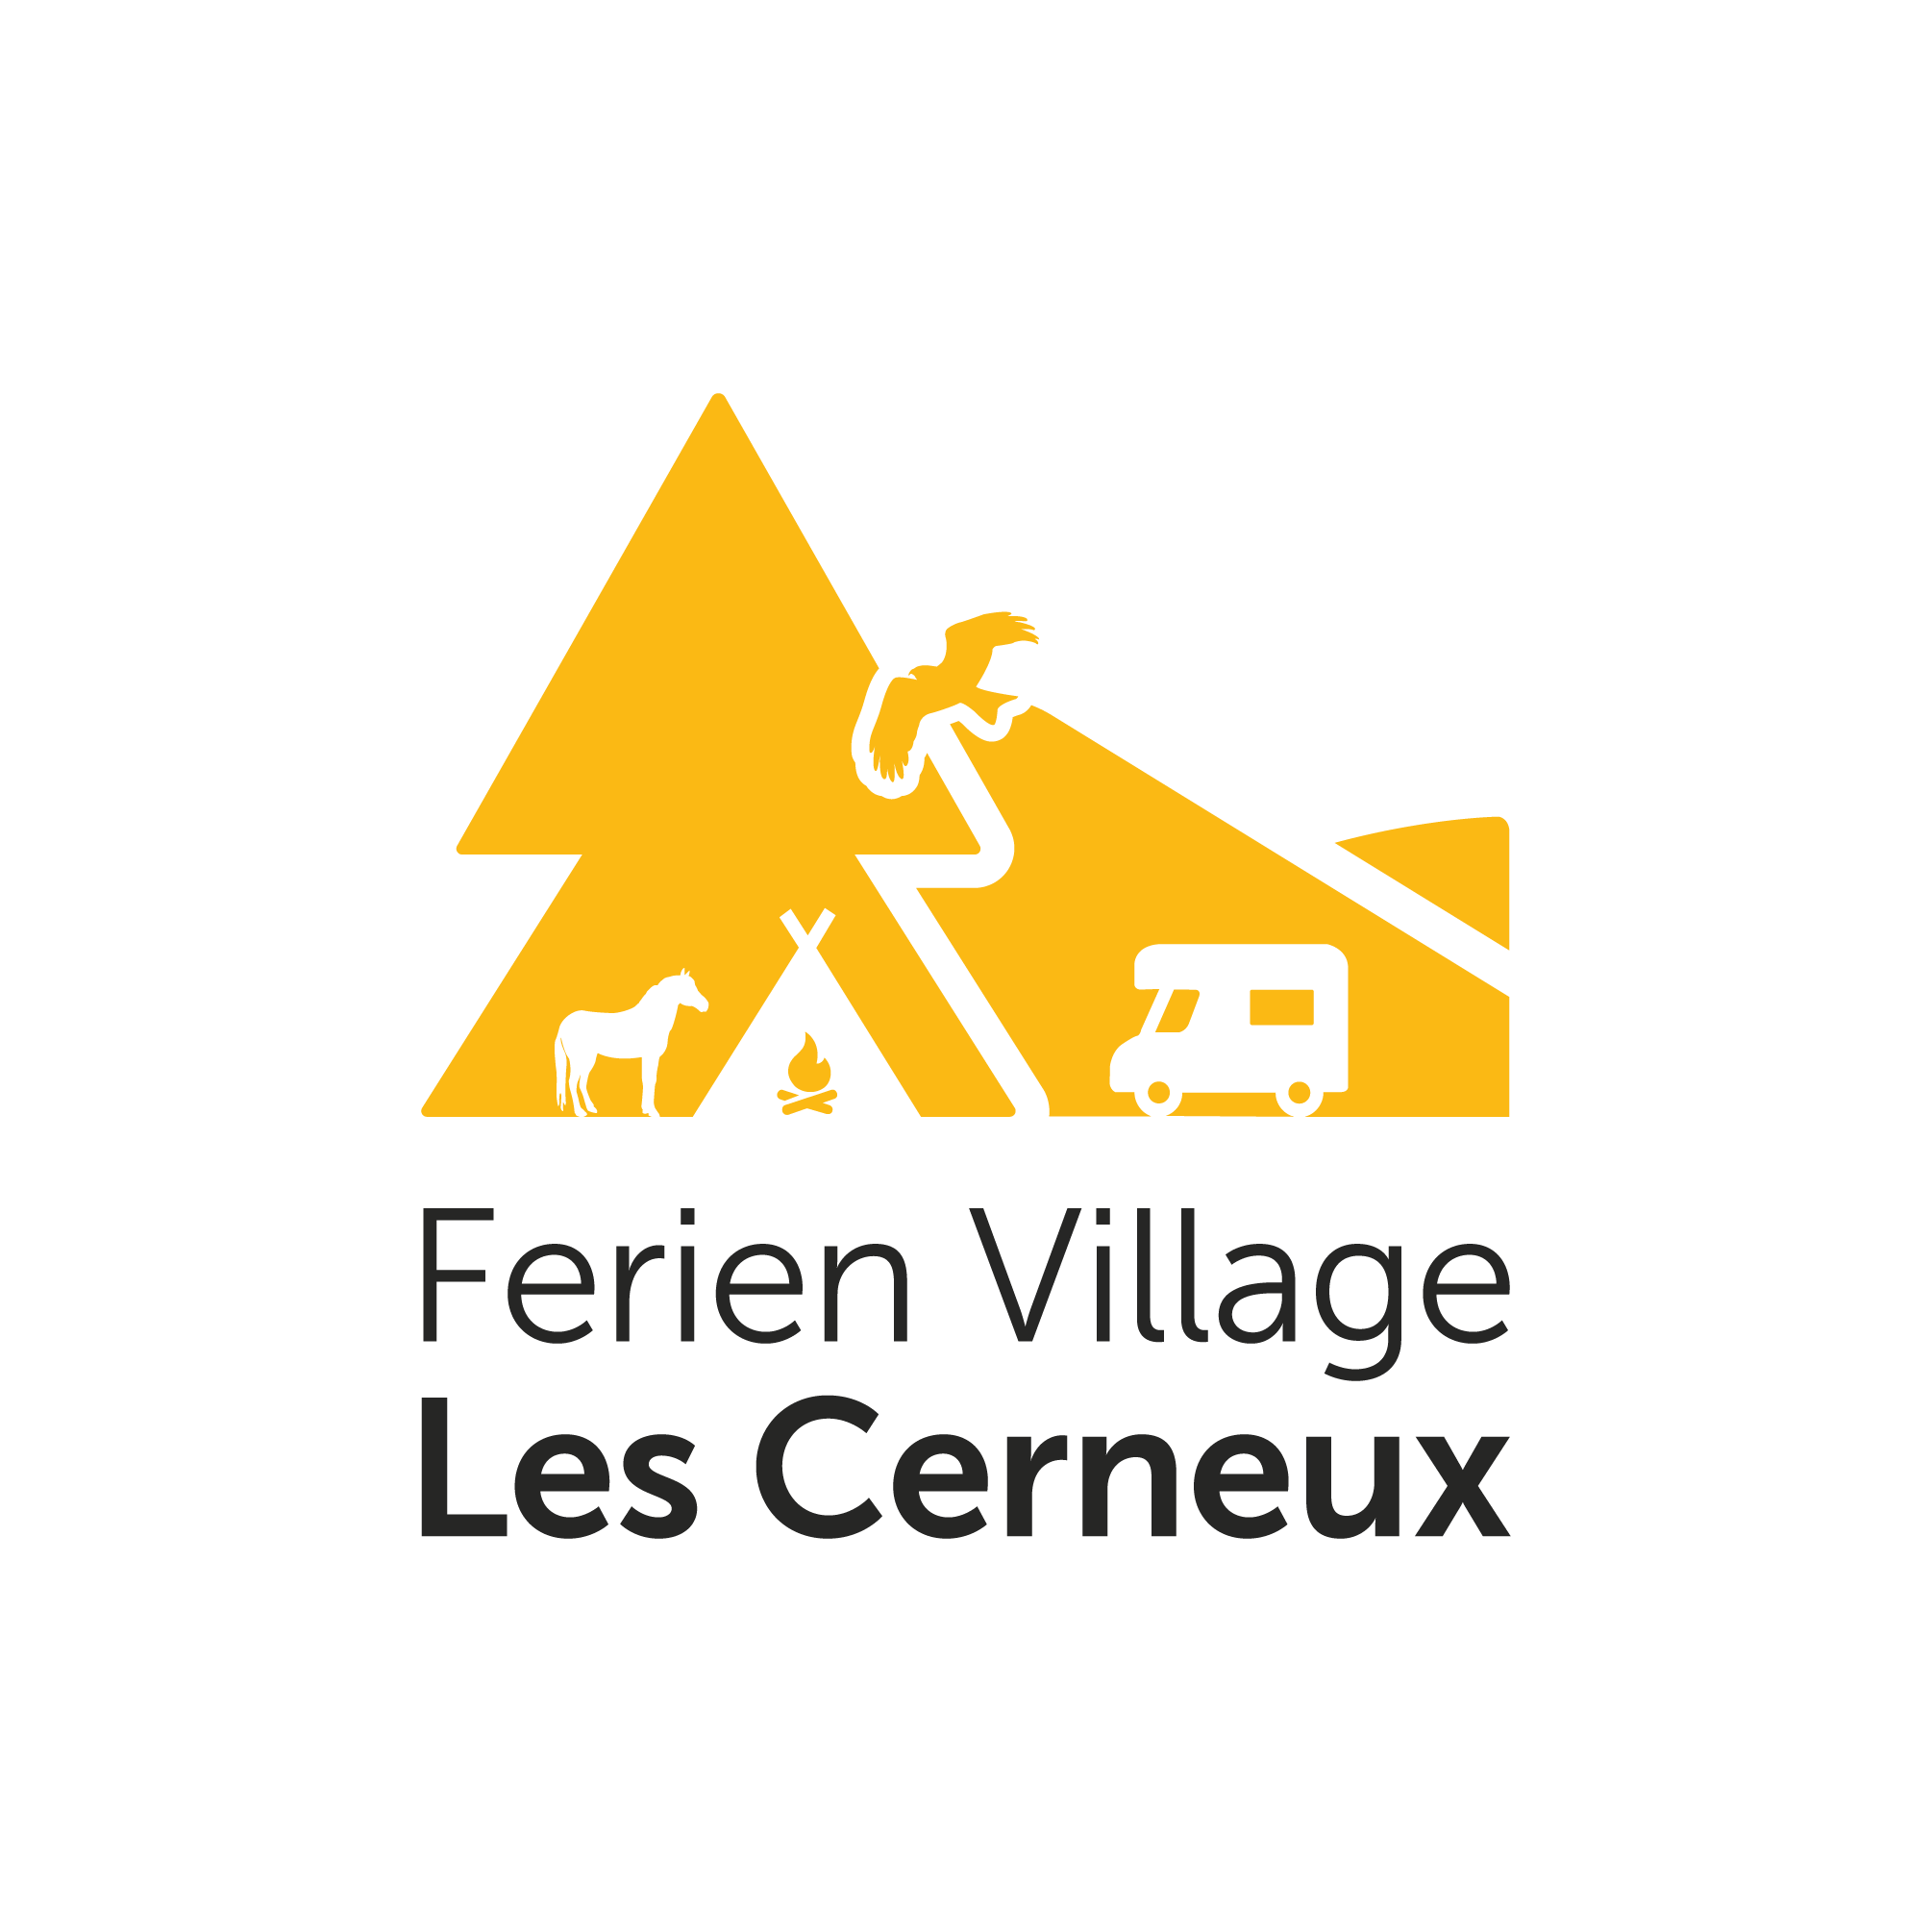 Ferien Village Les Cerneux GmbH